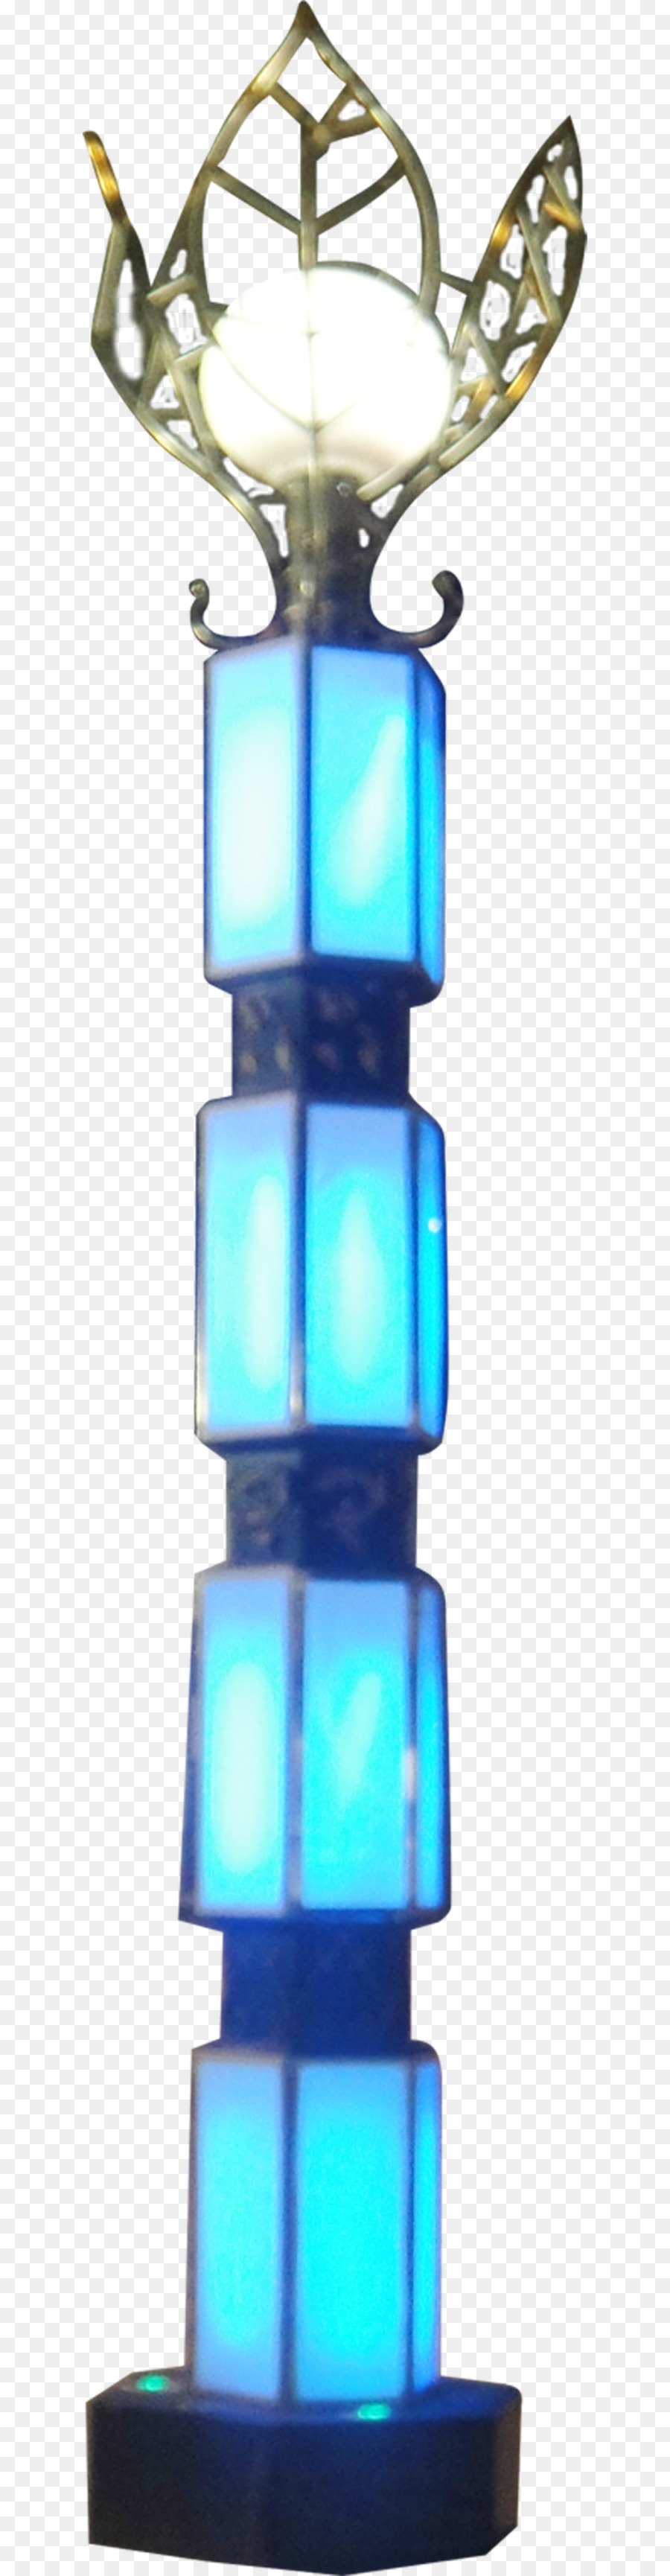 blu - Metallo lampione con struttura di modellazione rendering